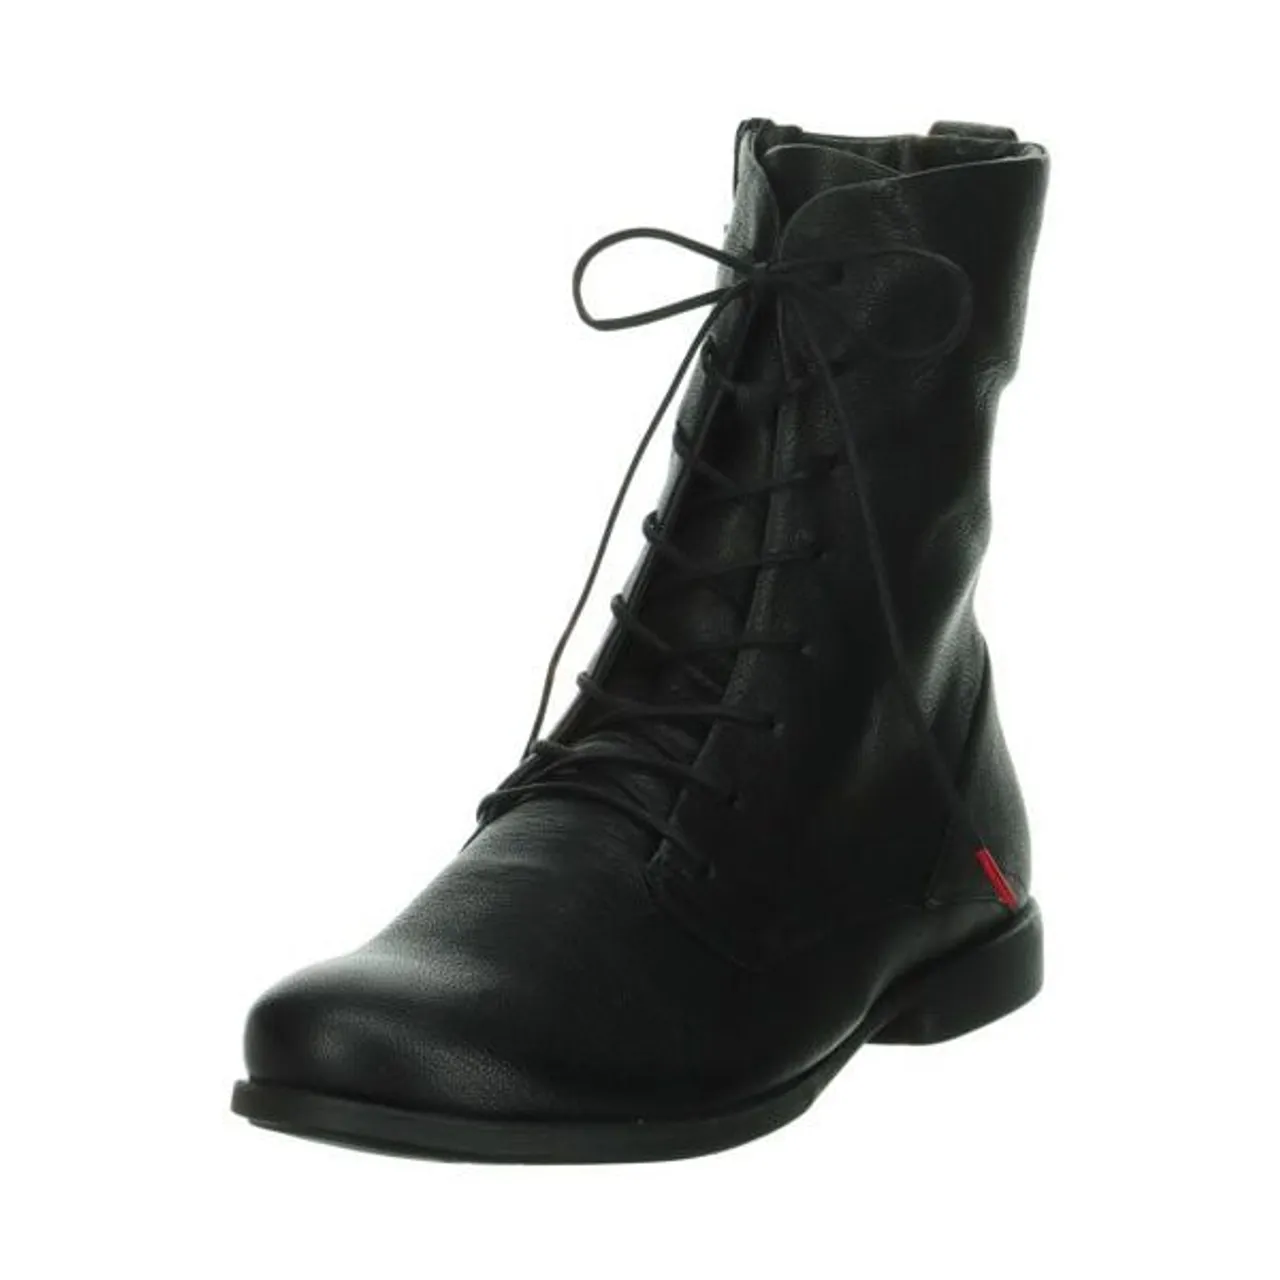 Think! Schnürstiefelette THINK "AGRAT" Gr. 37, schwarz (schwarz, uni) Damen Schuhe Reißverschlussstiefeletten